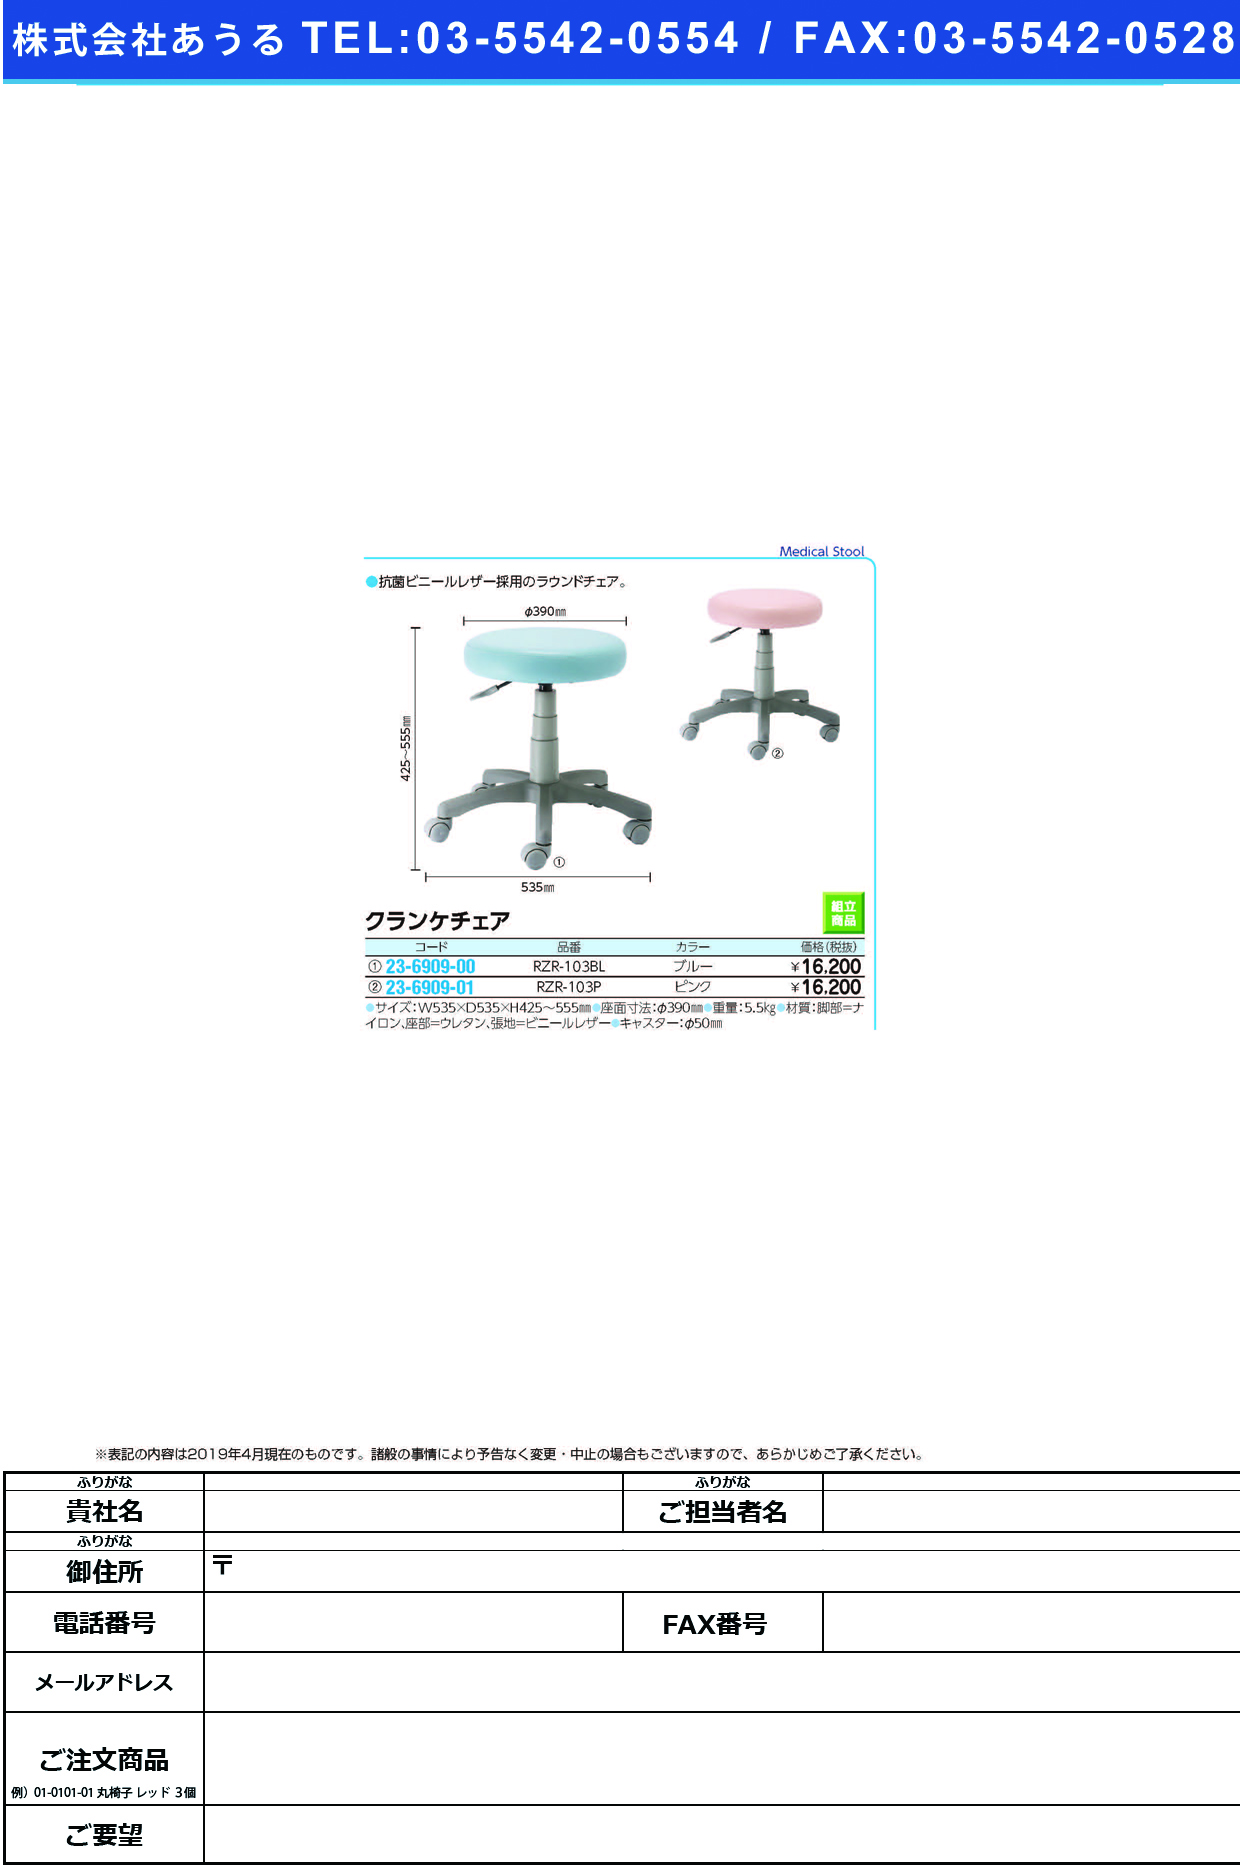 (23-6909-01)クランケチェア RZR-103P(ﾋﾟﾝｸ) ｸﾗﾝｹﾁｪｱ(ナカバヤシ)【1台単位】【2019年カタログ商品】